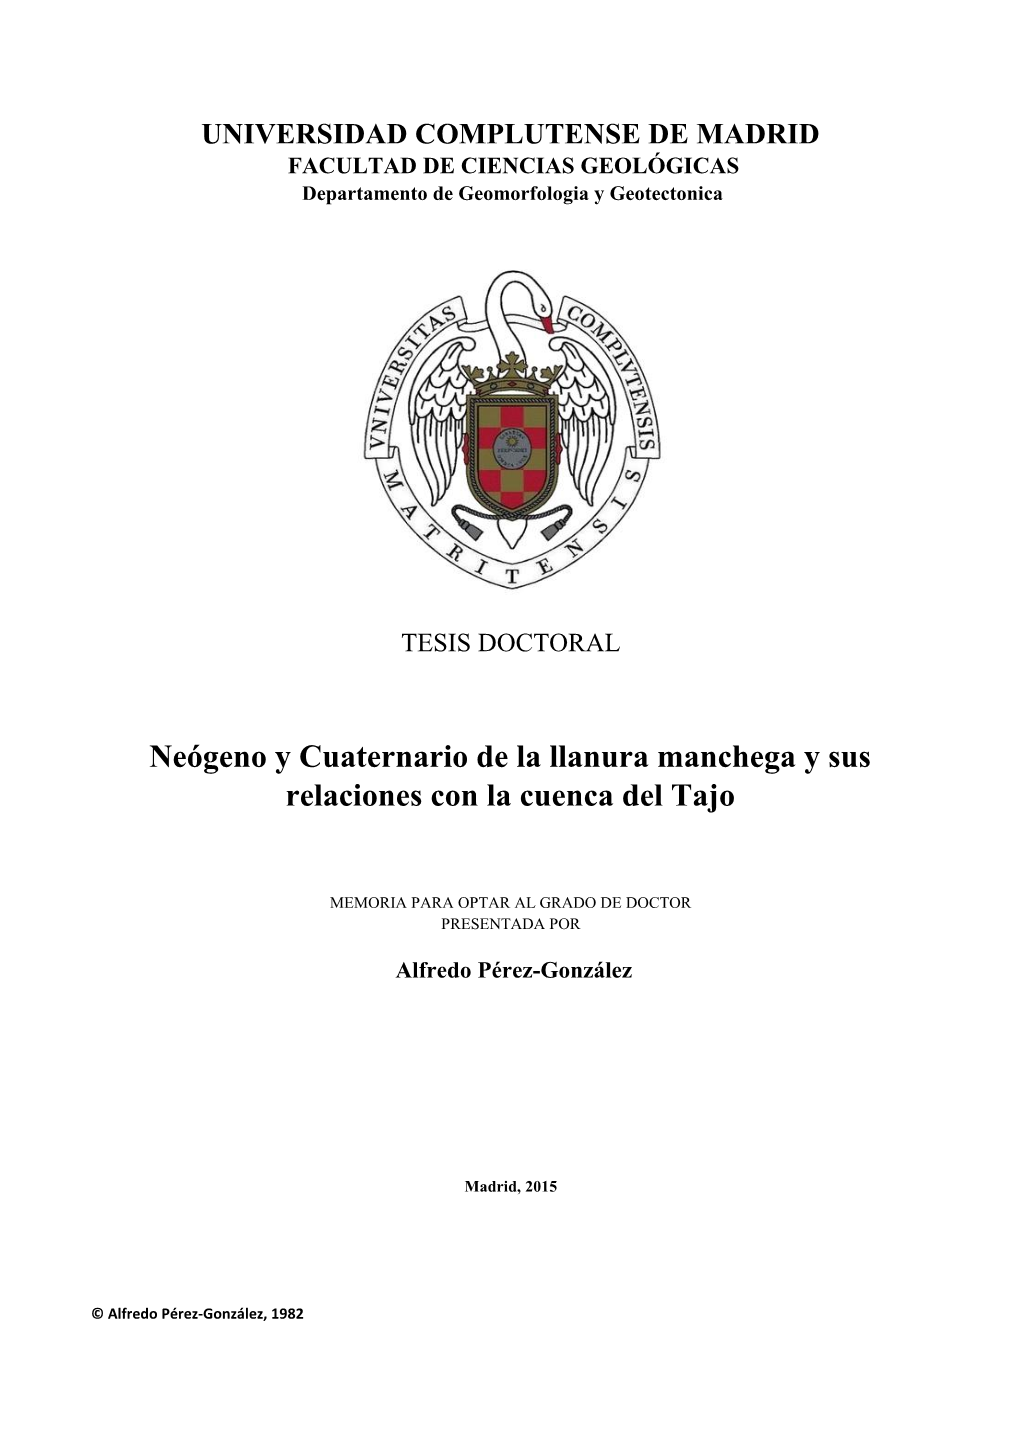 Neógeno Y Cuaternario De La Llanura Manchega Y Sus Relaciones Con La Cuenca Del Tajo